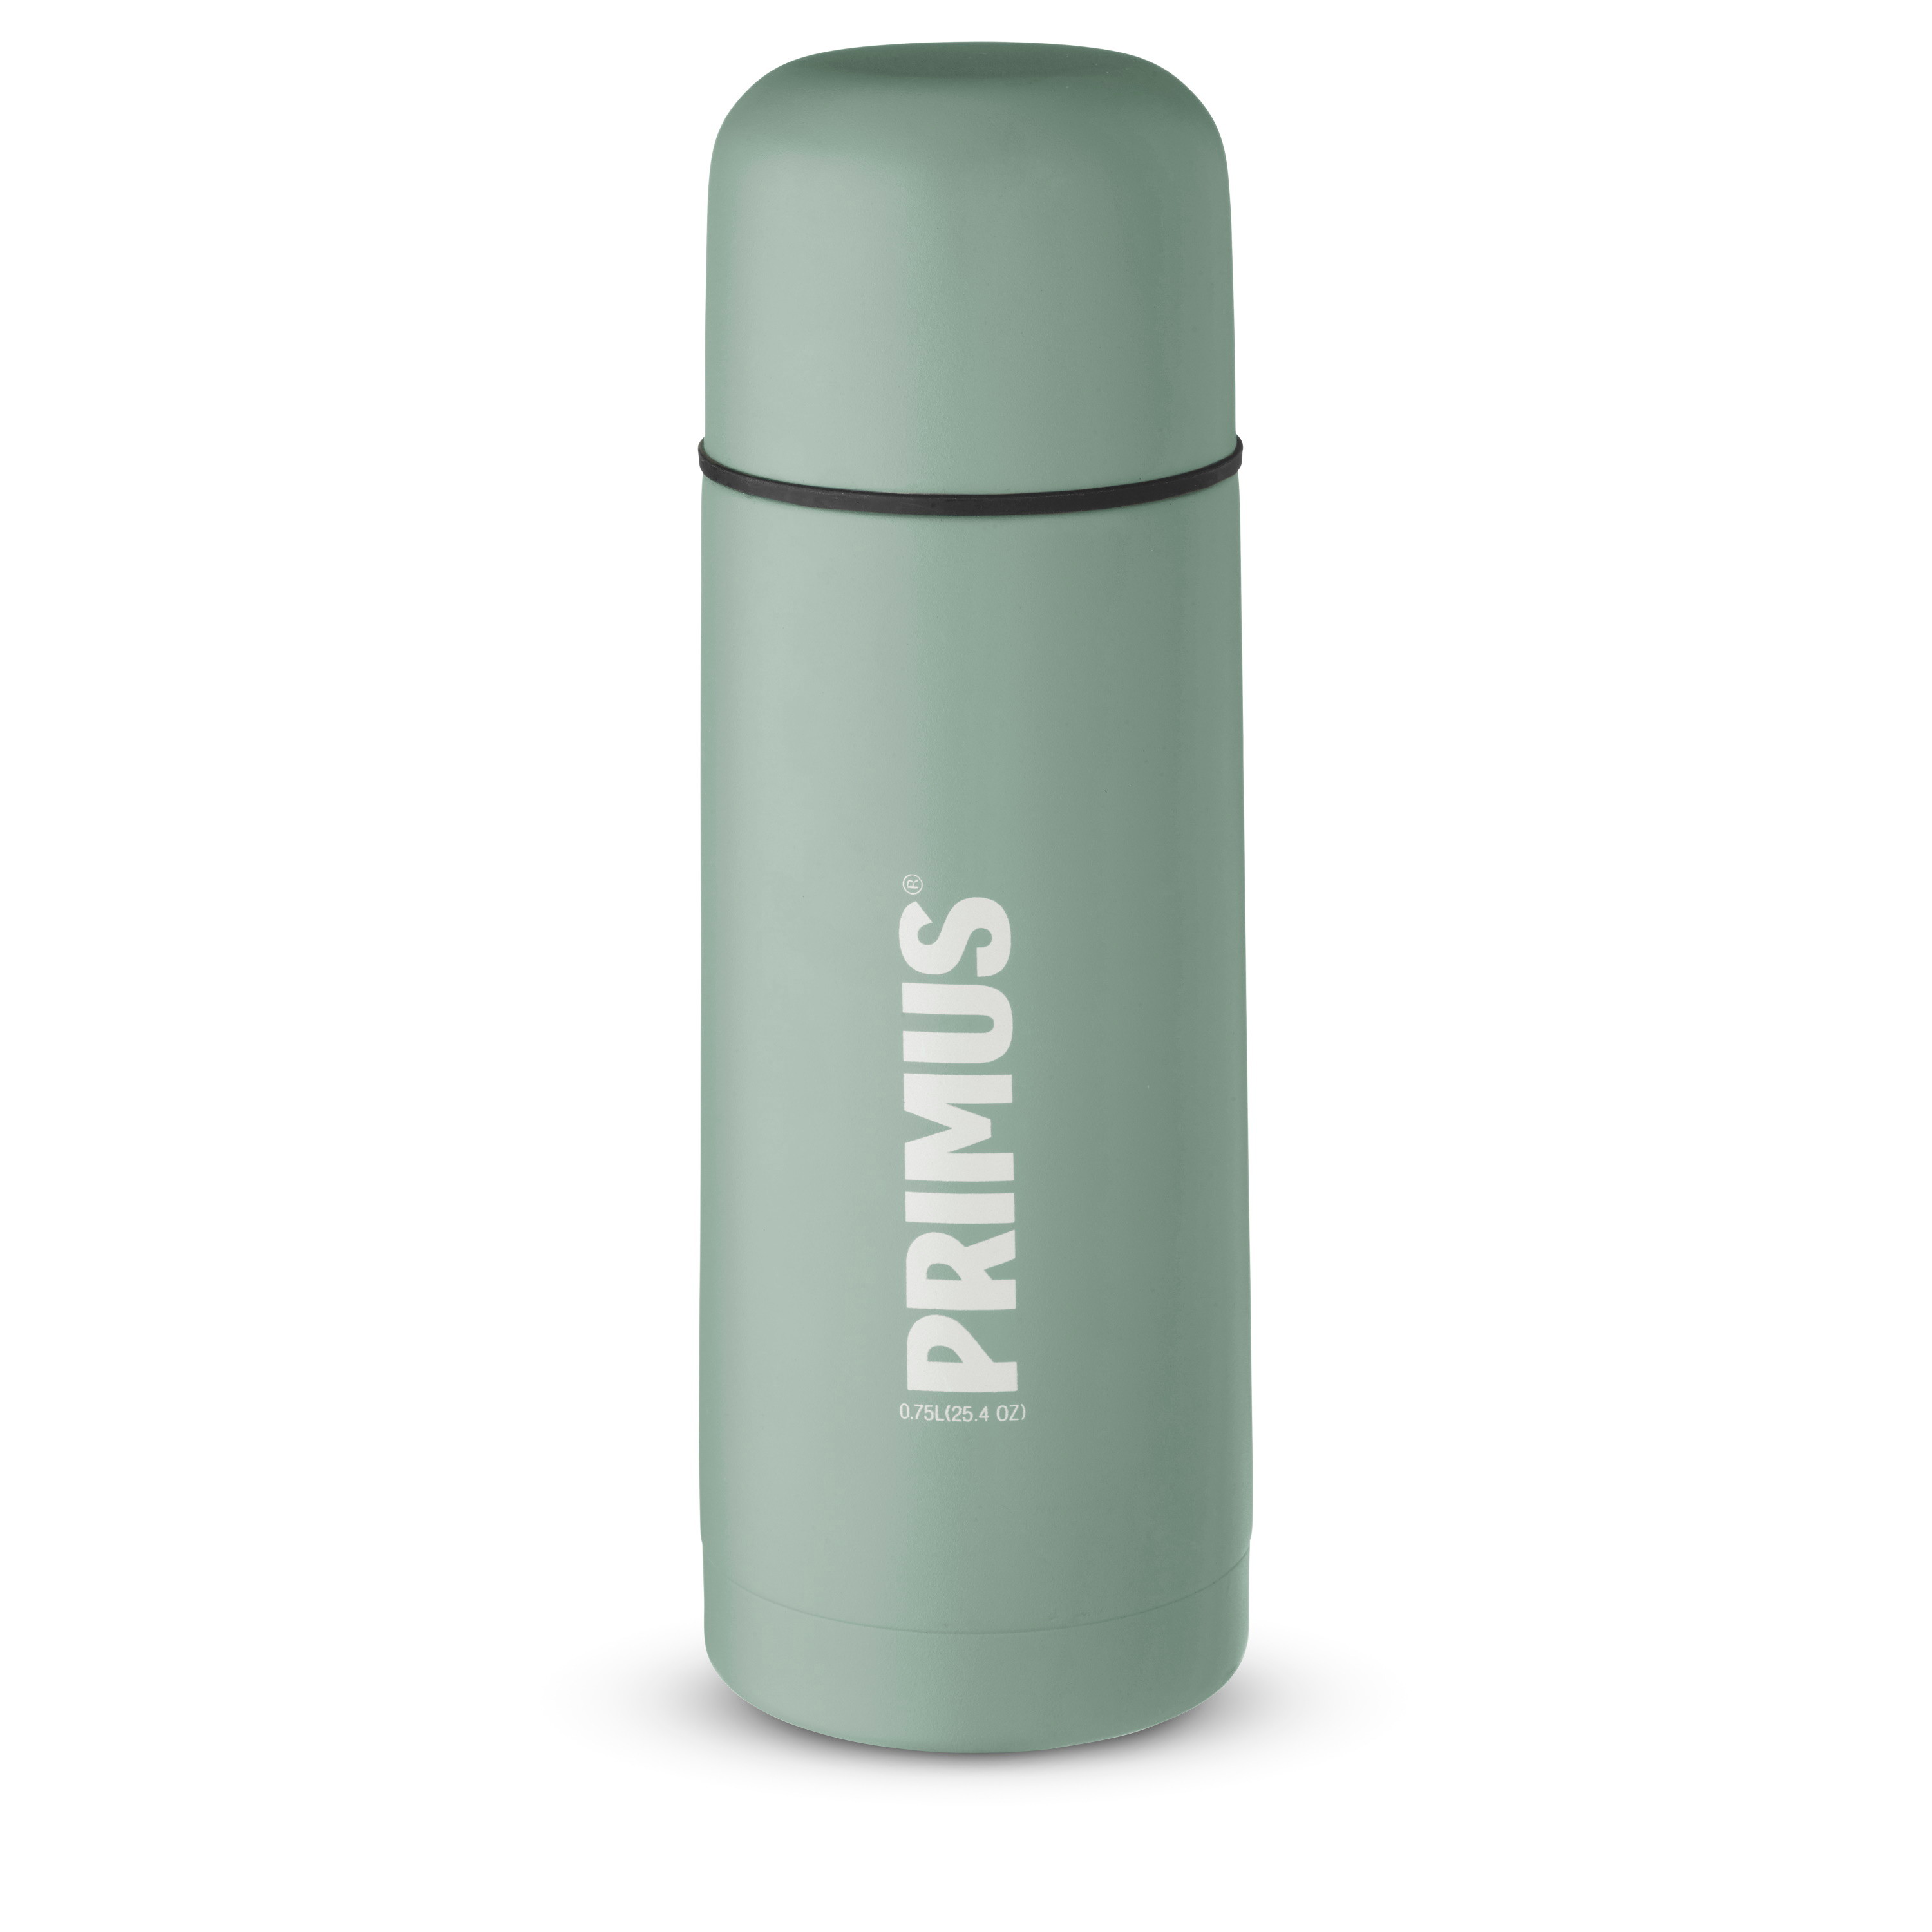 Primus Vacuum Bottle 0.75 L Mint Green